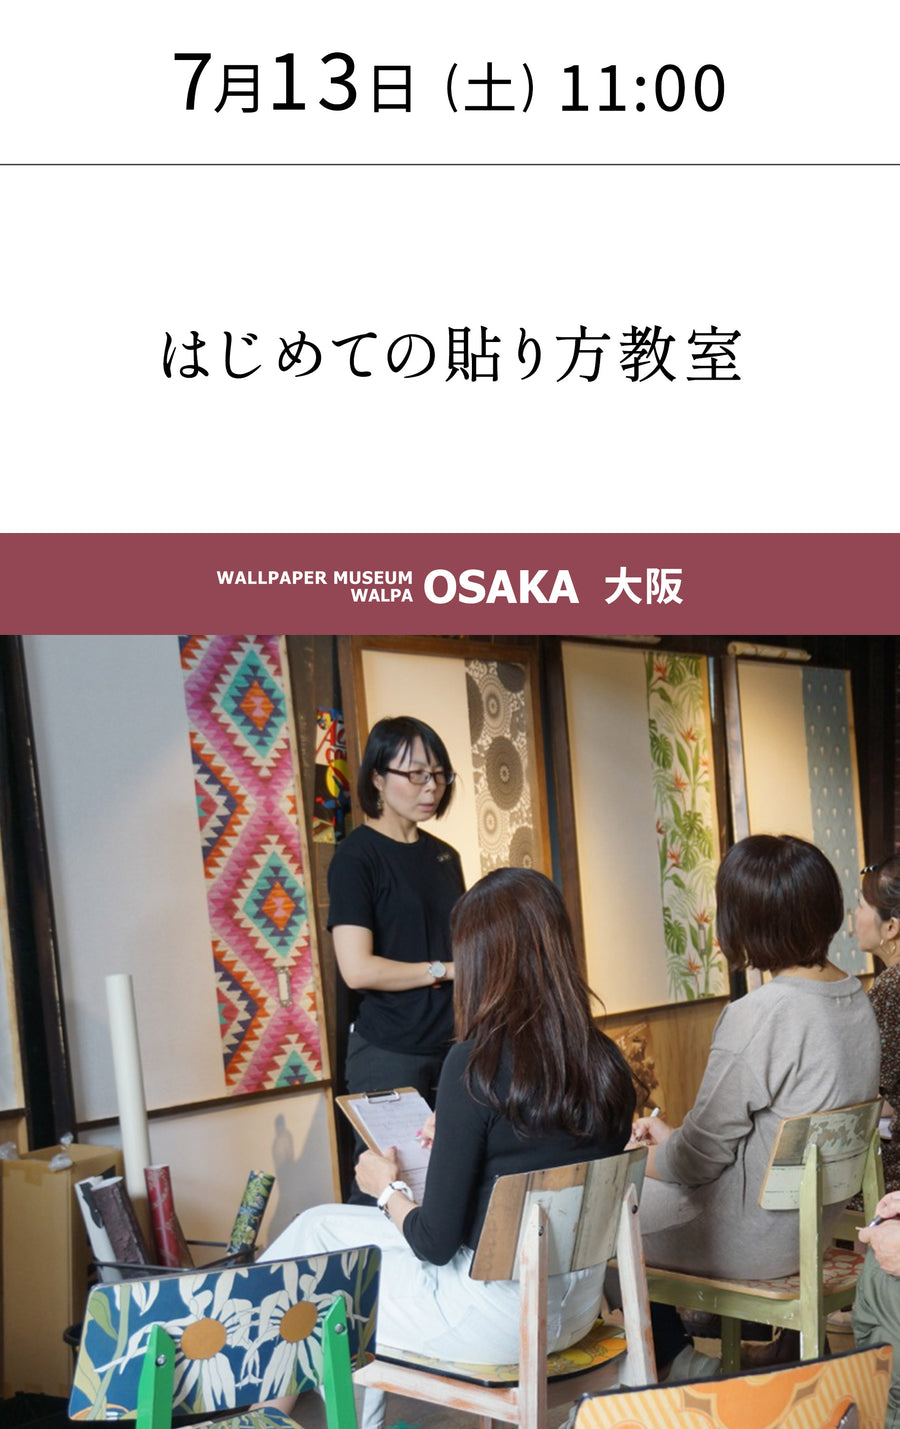 7月13日(土) 11:00～WALLPAPER MUSEUM WALPA / OSAKA ワークショップ 「はじめての貼り方教室」